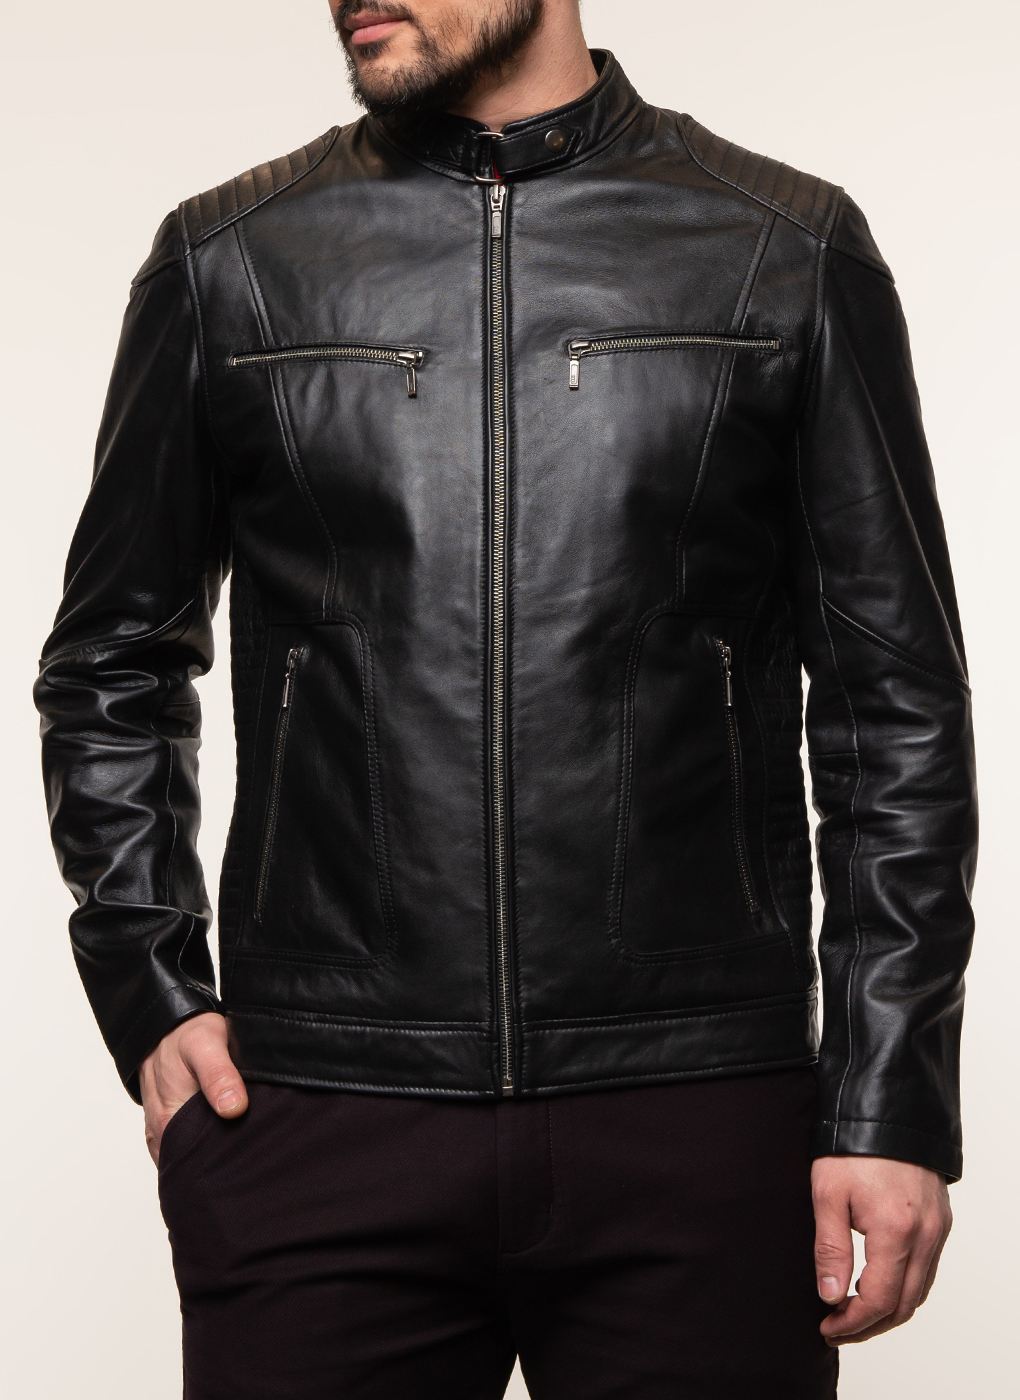 Кожаная куртка мужская Каляев 62648 черная 60 RU